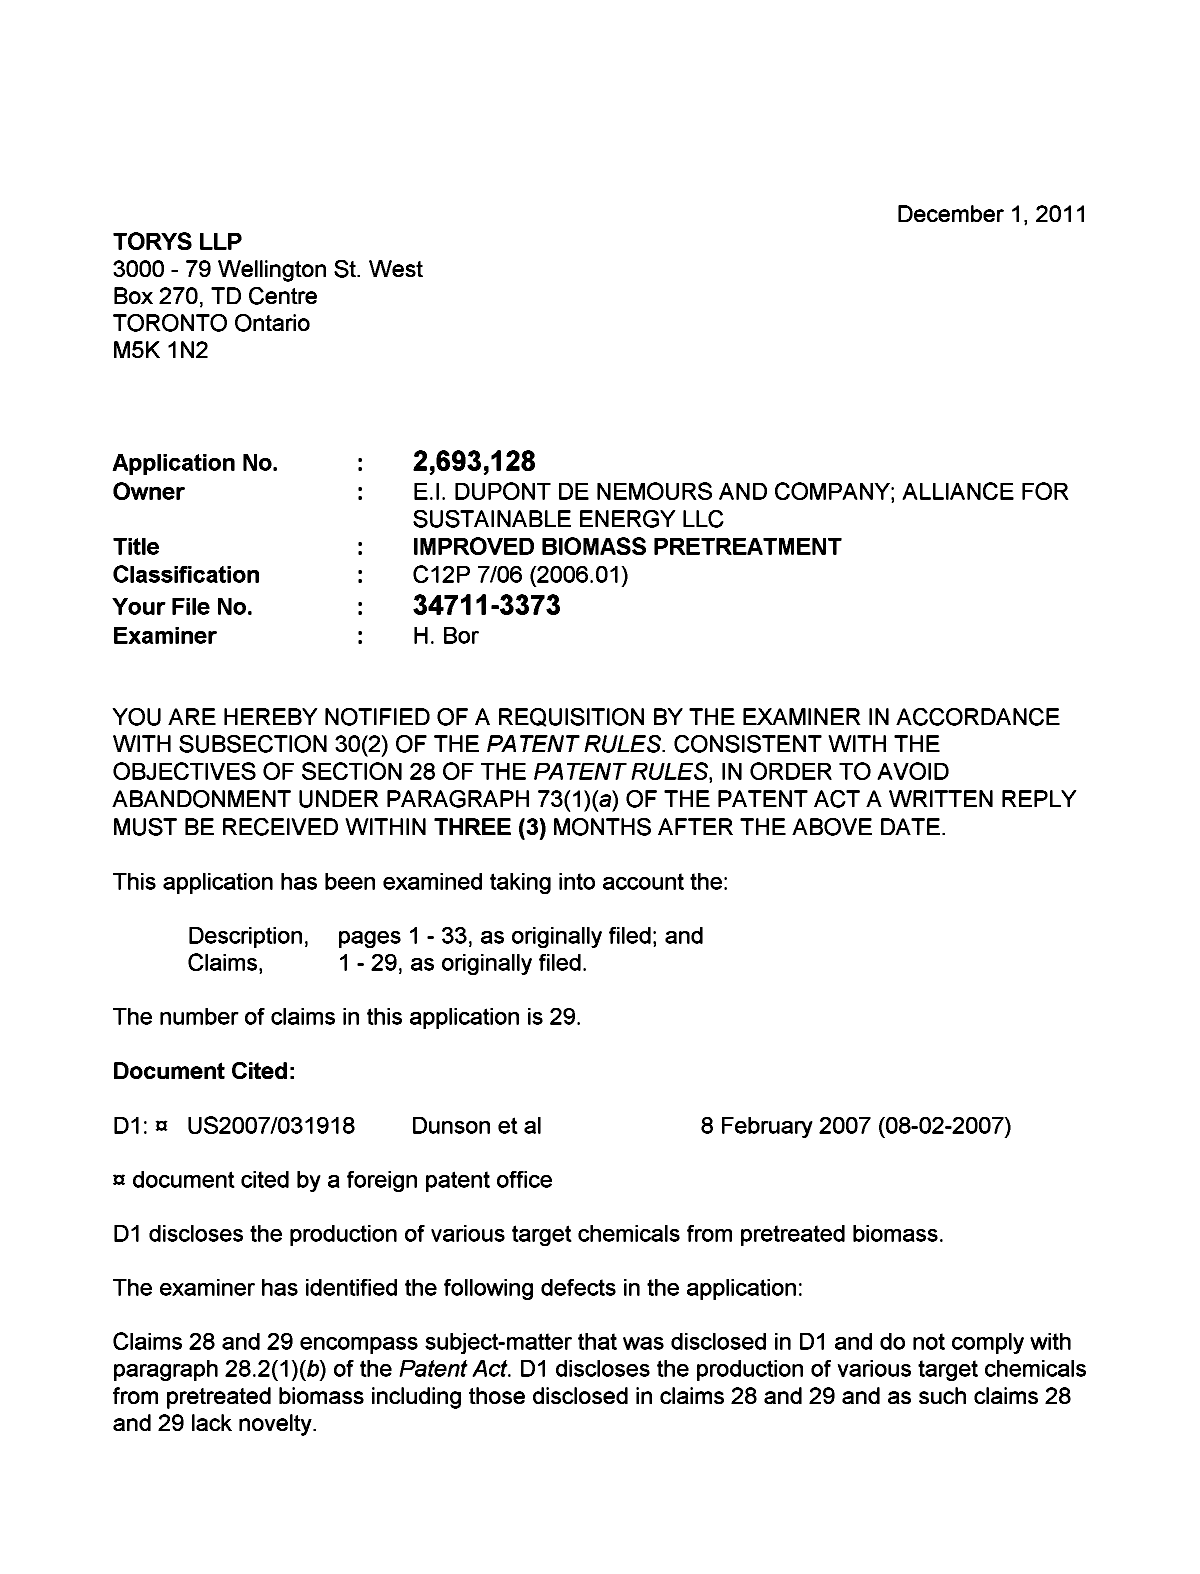 Document de brevet canadien 2693128. Poursuite-Amendment 20101201. Image 1 de 2